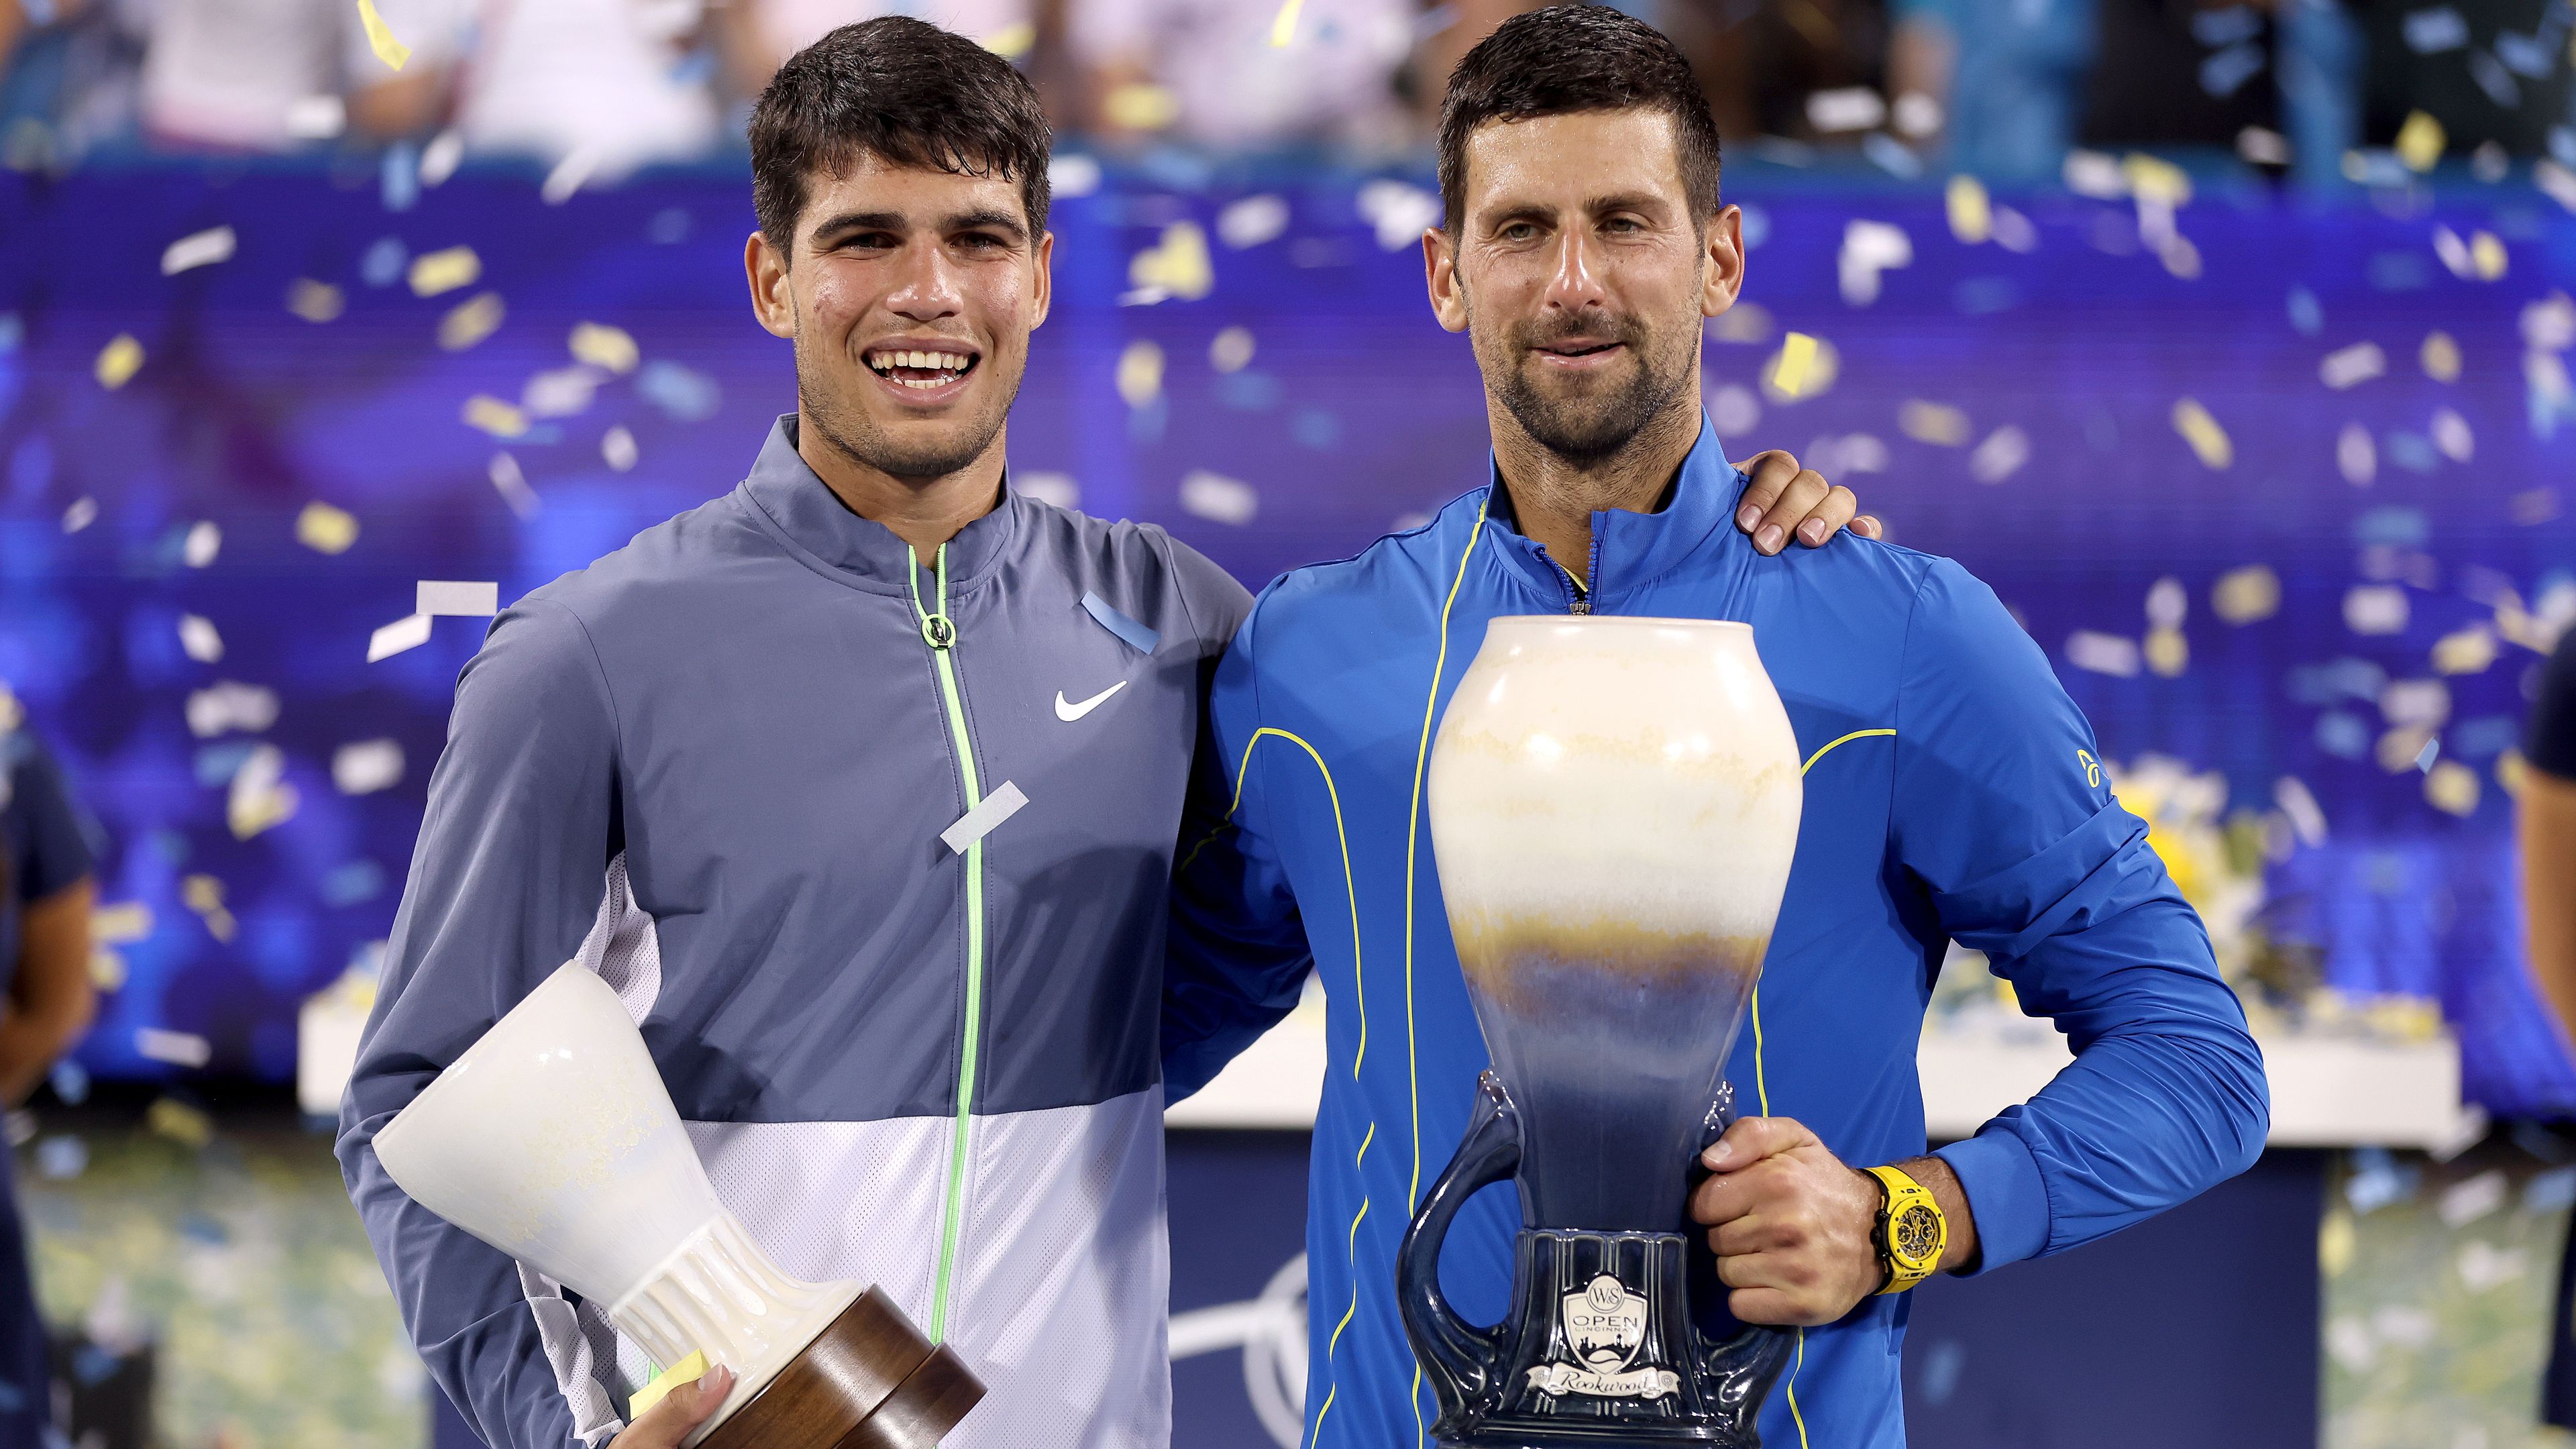 Harminchárom éve nem volt ilyen: maratoni csatát hozott Djokovics és Alcaraz döntője